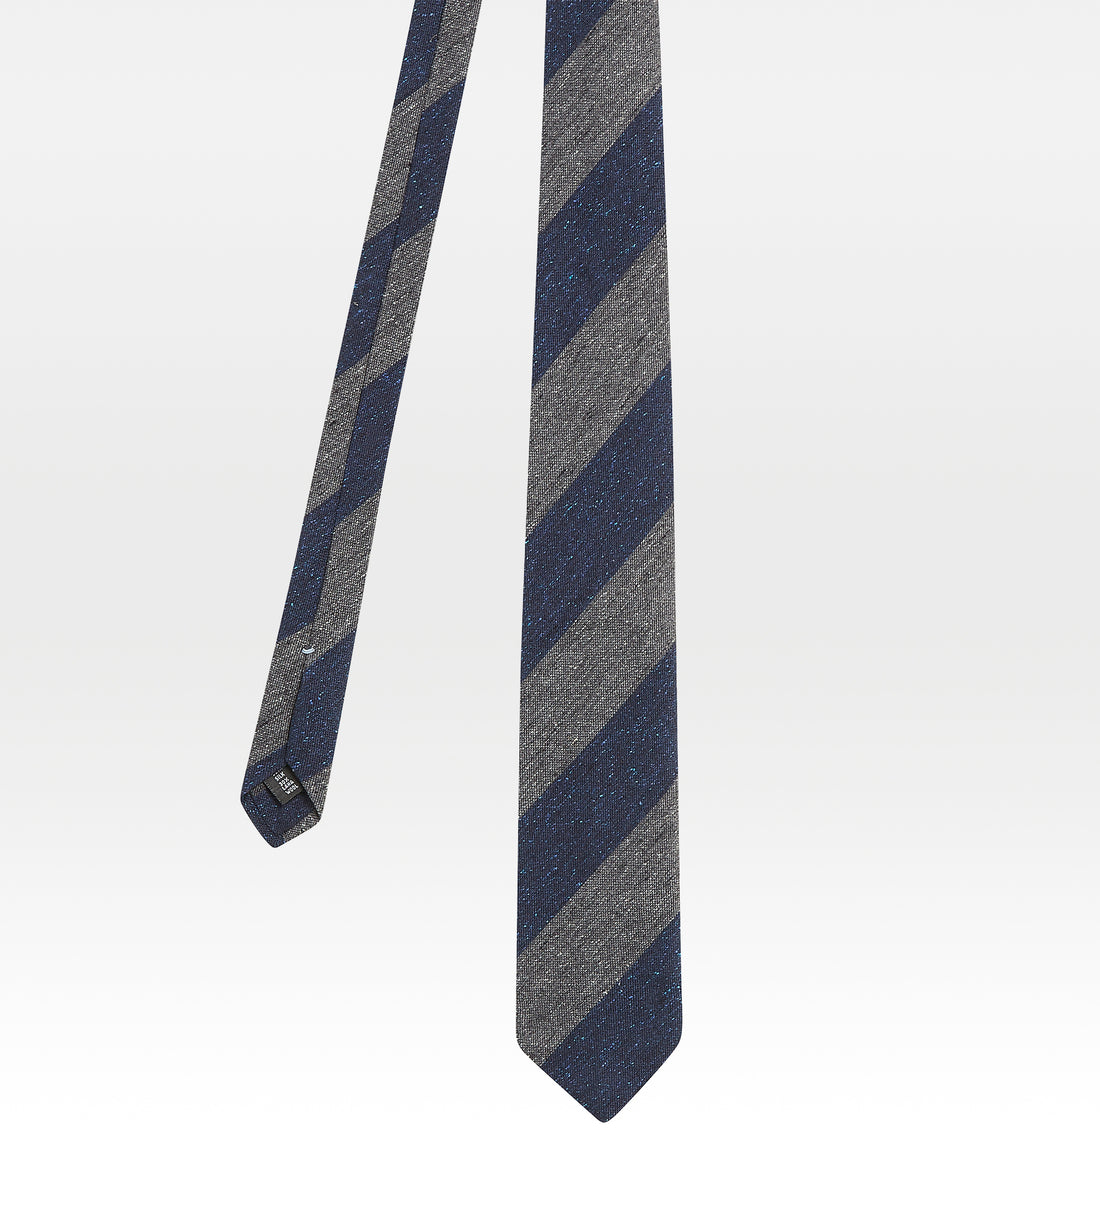 Cravate en soie bleu et gris